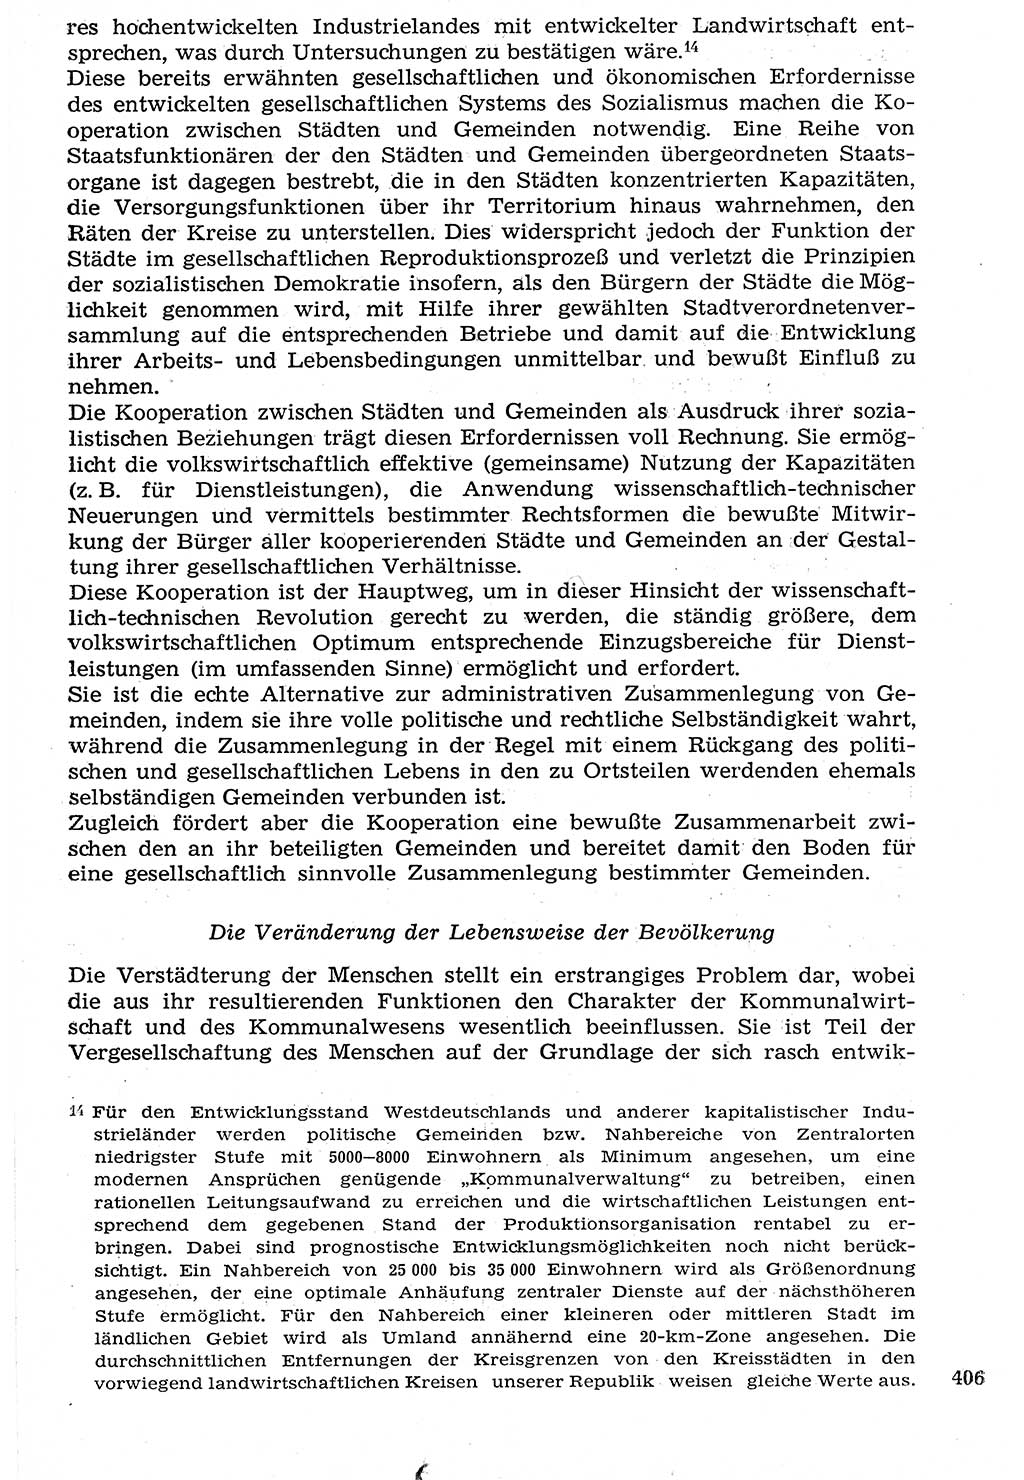 Staat und Recht (StuR), 17. Jahrgang [Deutsche Demokratische Republik (DDR)] 1968, Seite 406 (StuR DDR 1968, S. 406)